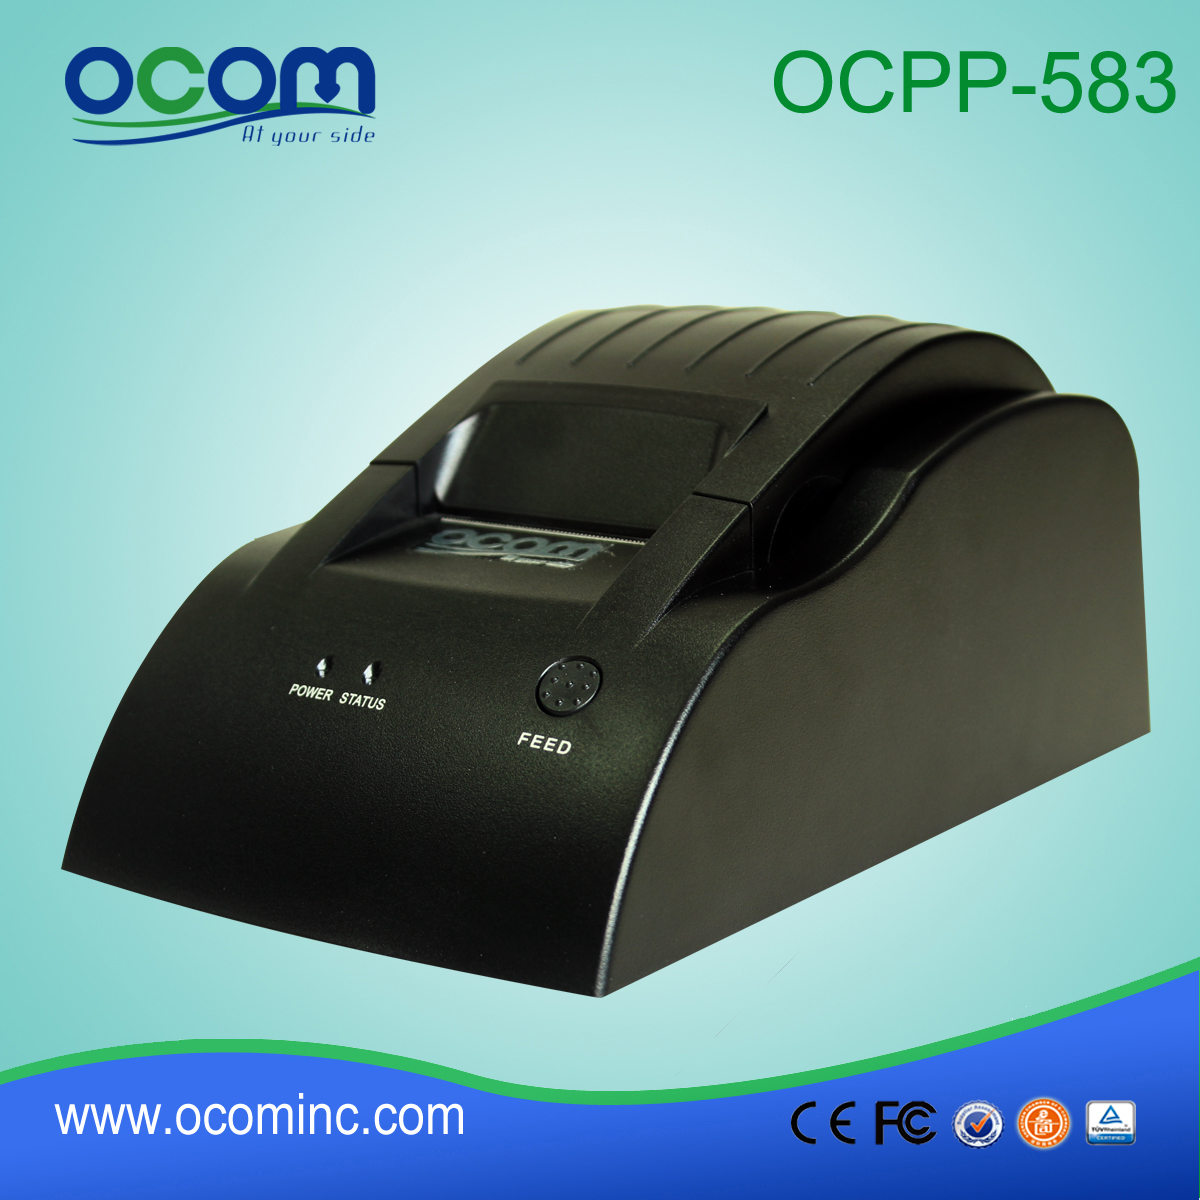 Tanie model OCPP-583-U 58mm POS System USB Termiczna drukarka biletów kwitowych